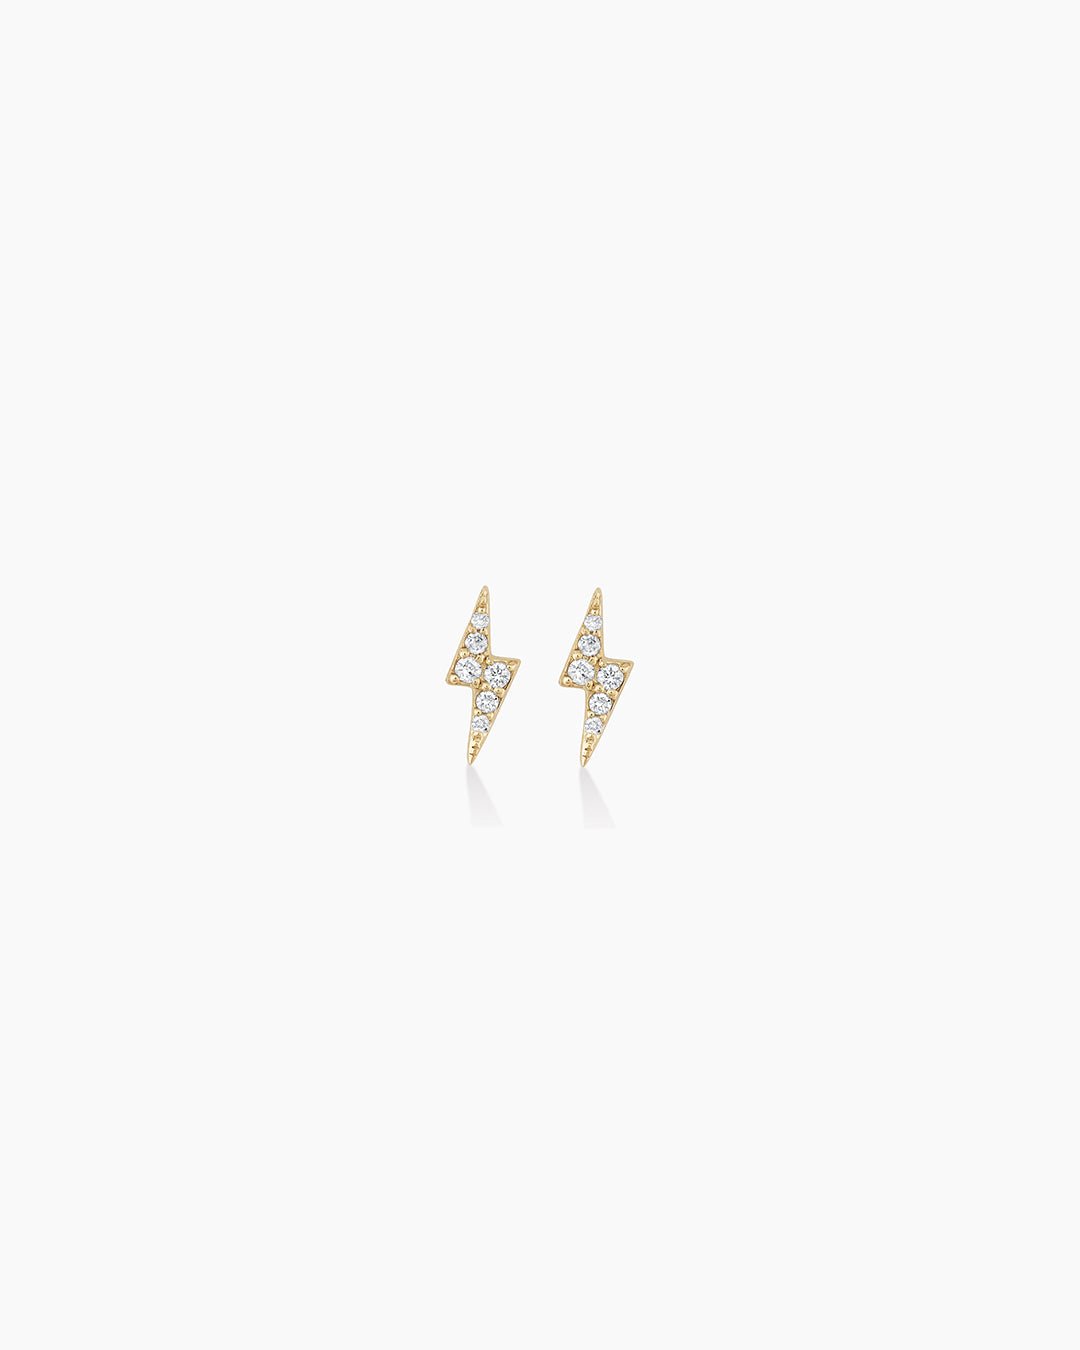 Diamond Lightning StudsLightning bolt earrings || option::14k Solid Gold, Pair